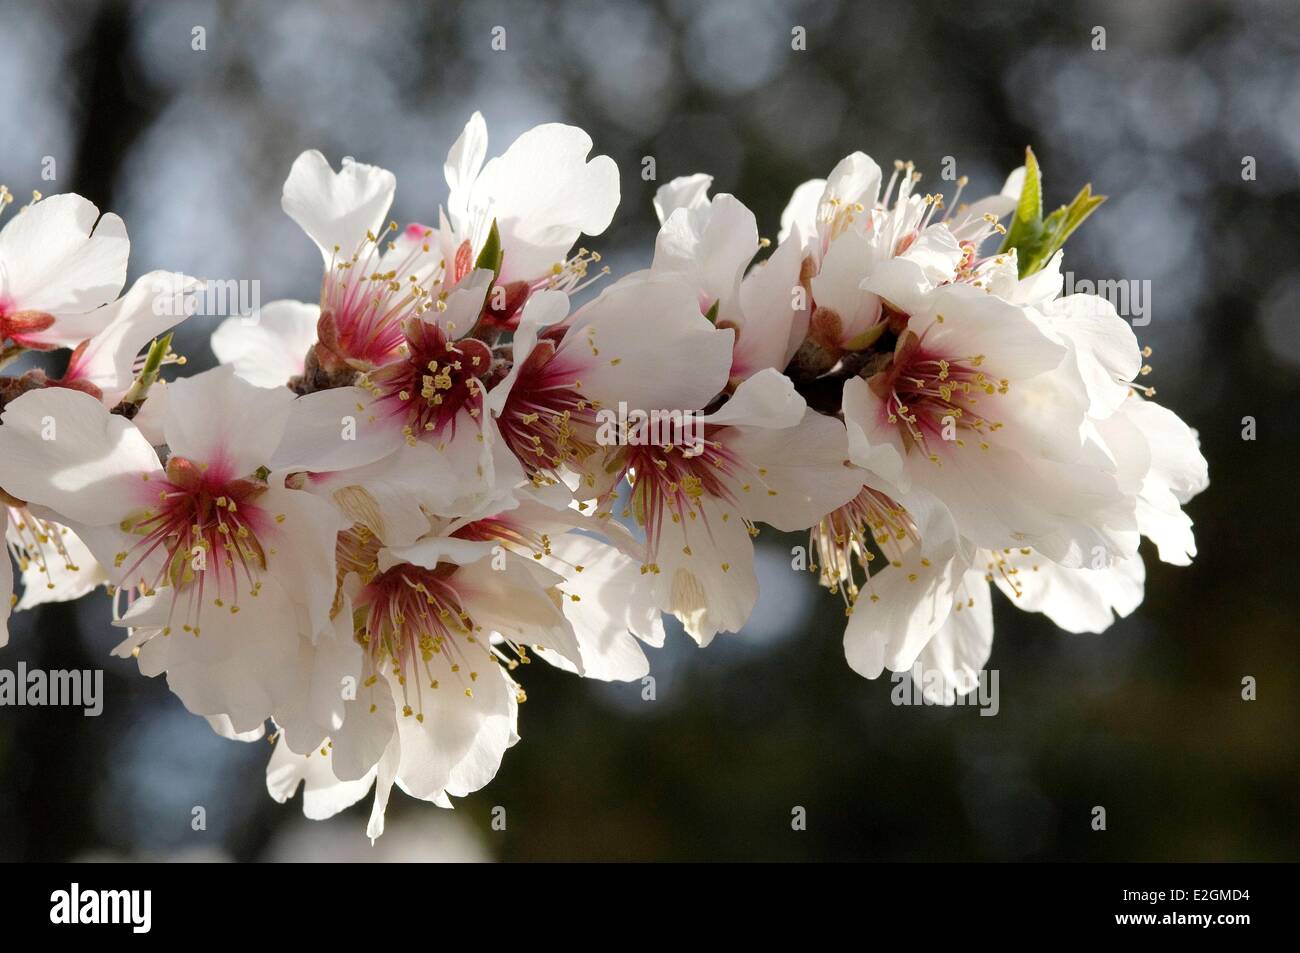 Almond (Prunus dulcis) flowers Stock Photo